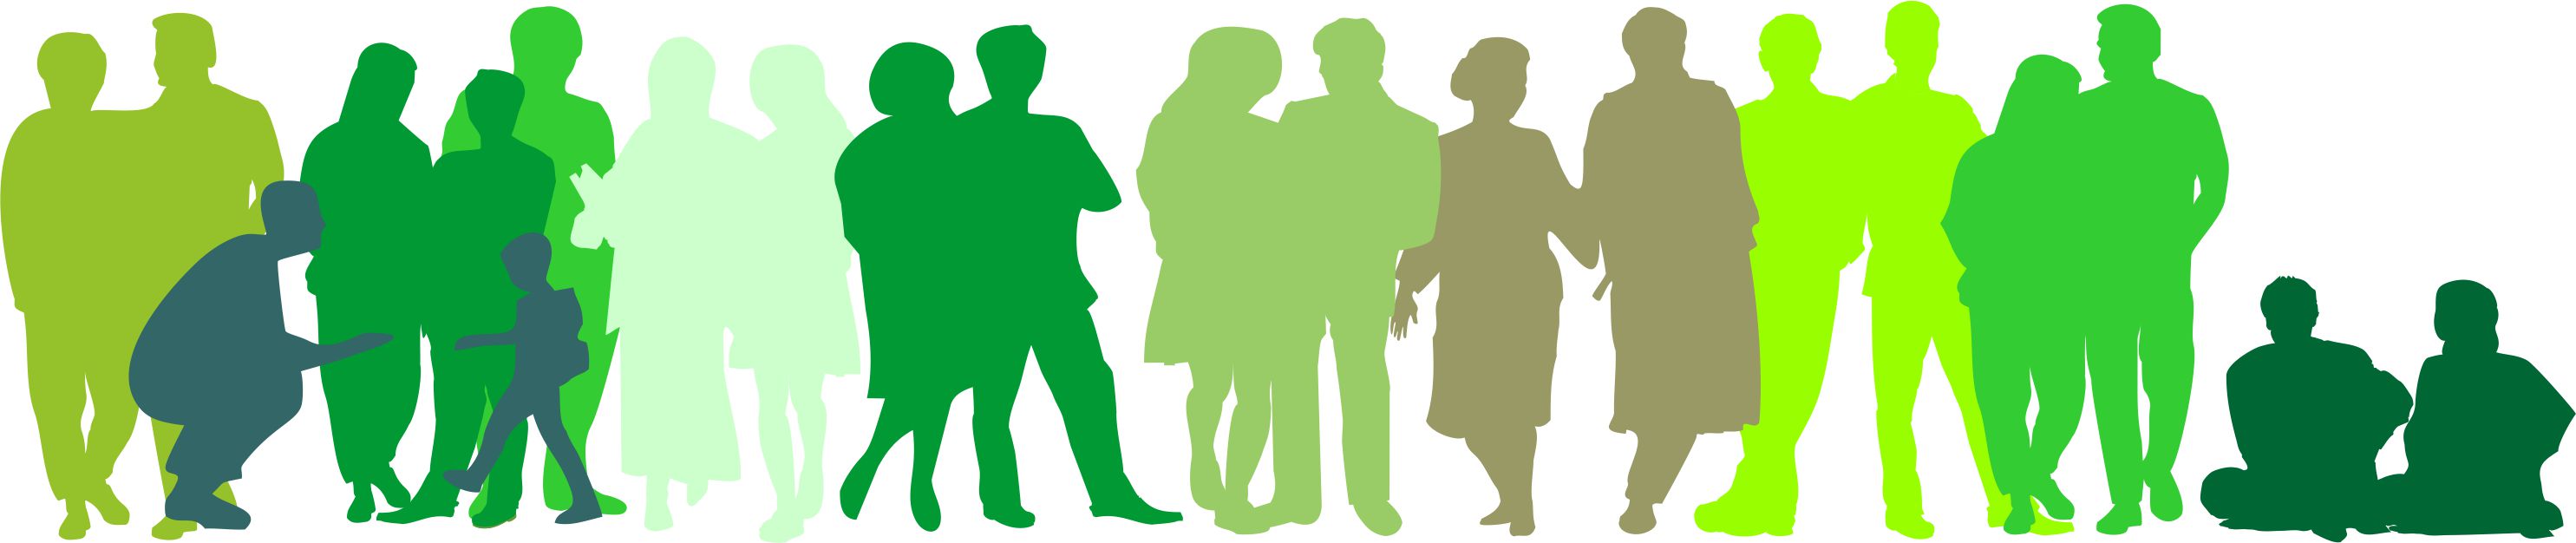 Silhouetten von Menschen in verschiedenen Grüntönen. Sie stehen so zueinander als würden sie kommunizieren. 